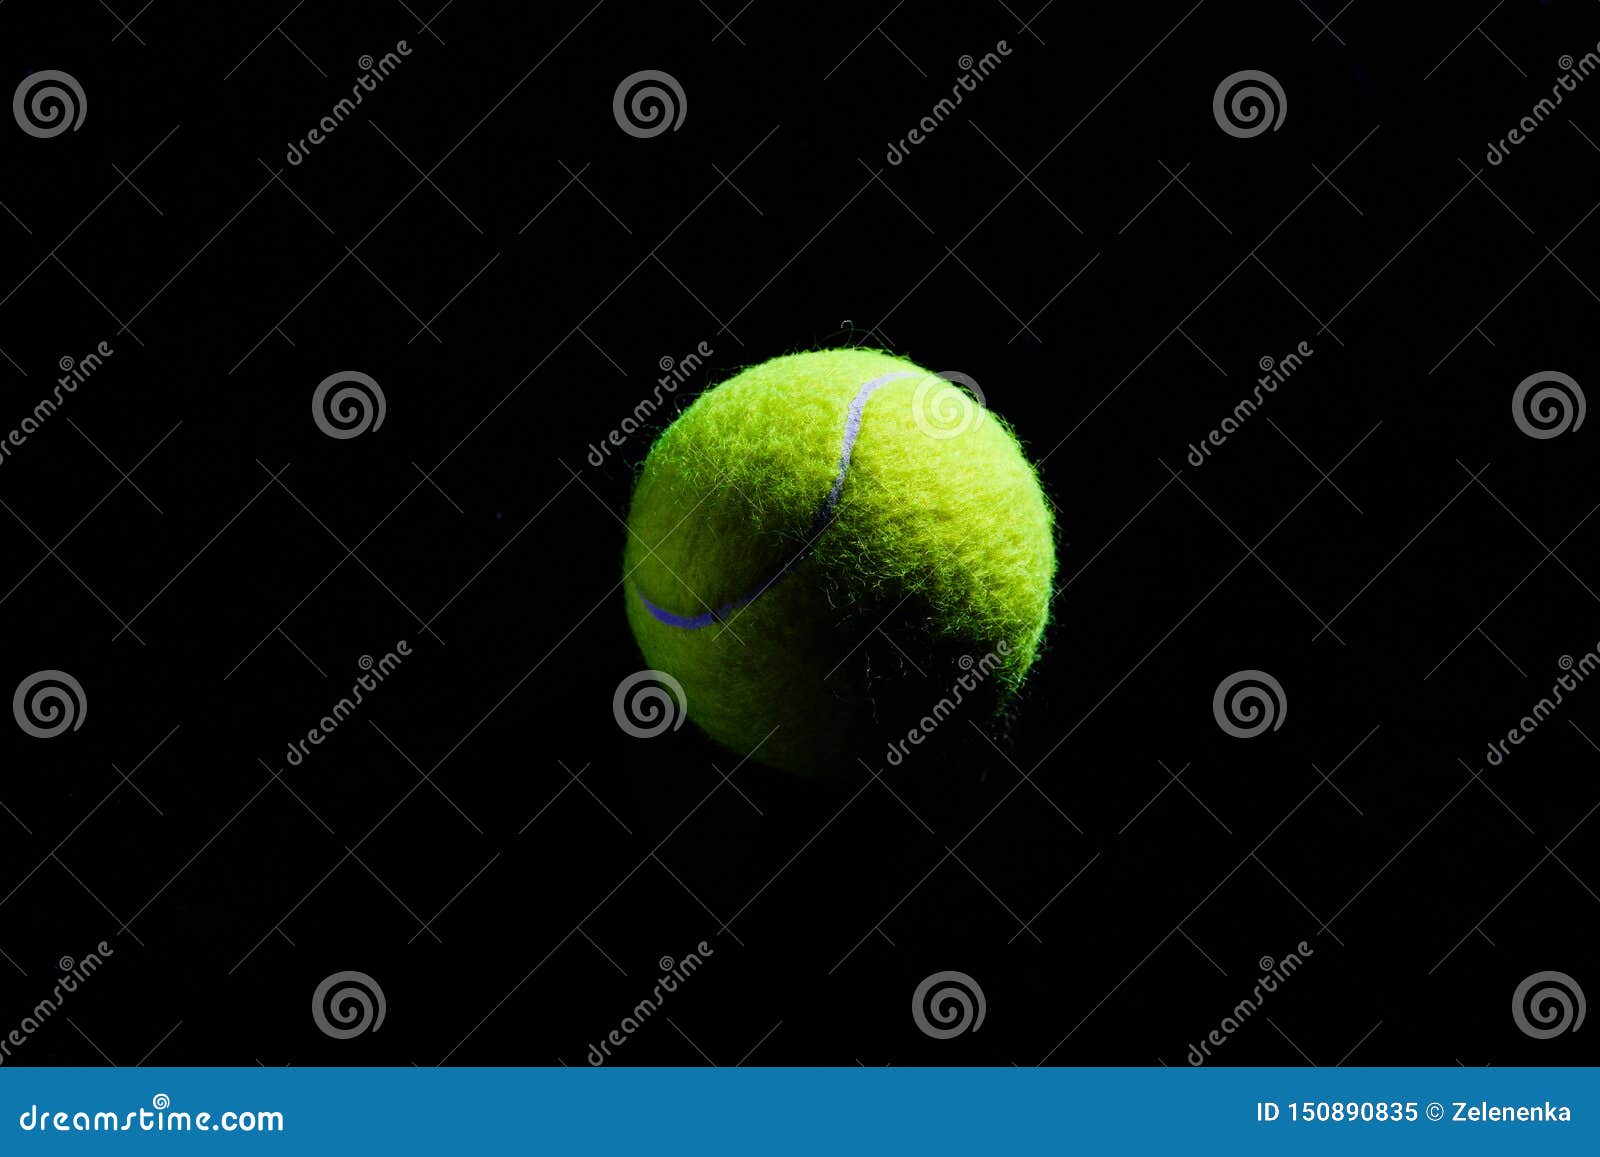 tenis com o simbolo n